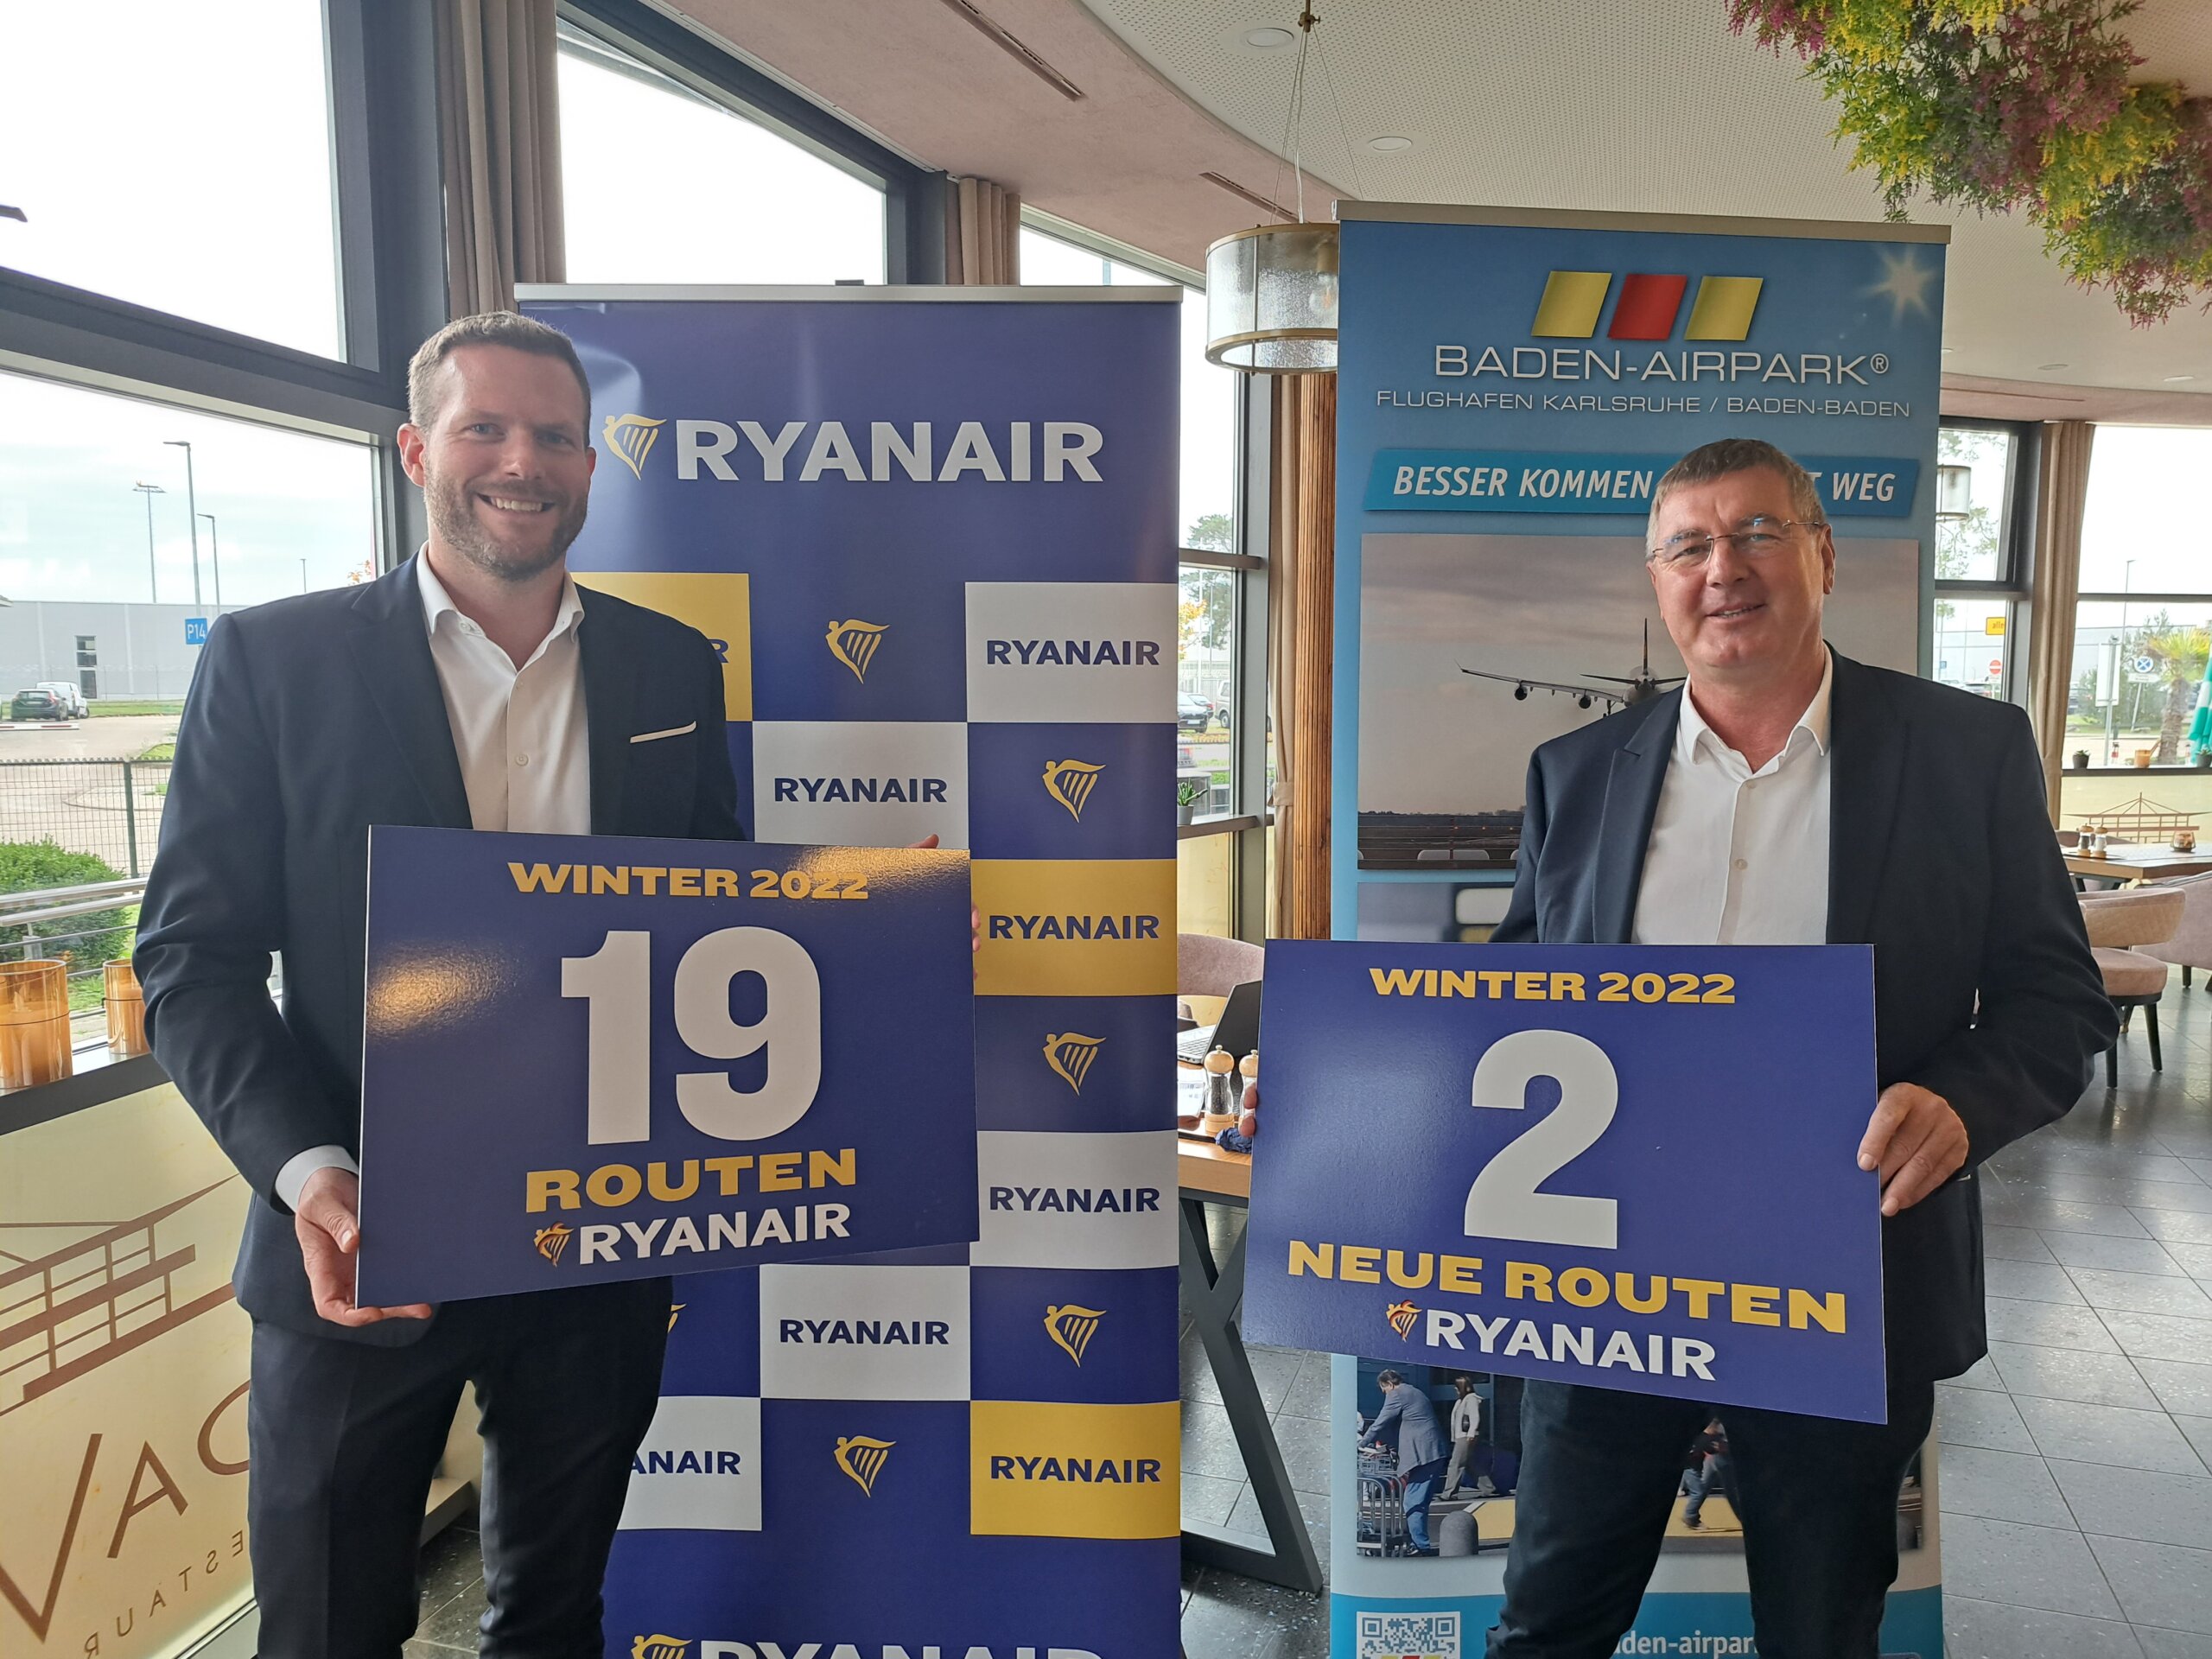 Ryanair Stellt Ihren Bisher Umfangreichsten Winterflugplan Für Karlsruhe/Baden-Baden Vor